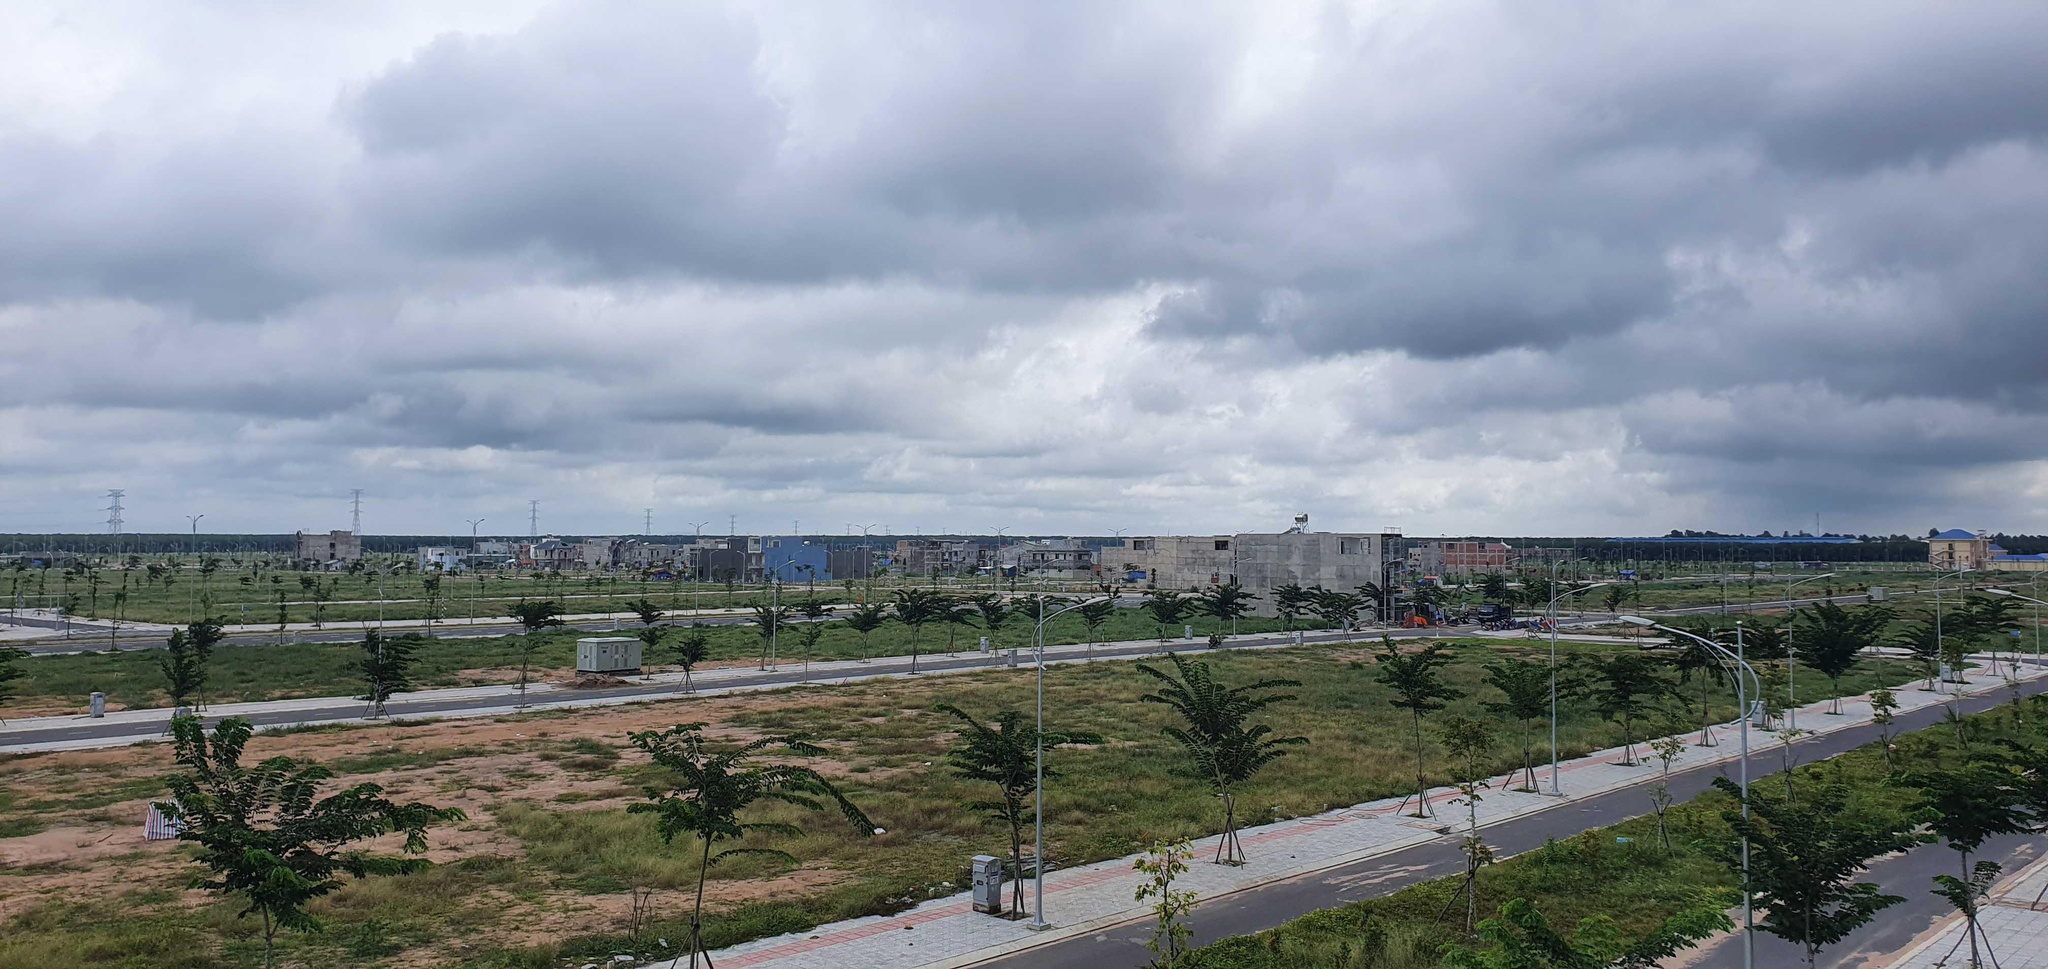 Hạ tầng, đường, cây xanh và hệ thống chiếu sáng đã hoàn thiện trong khu tái định cư Lộc An - Bình Sơn 282ha.